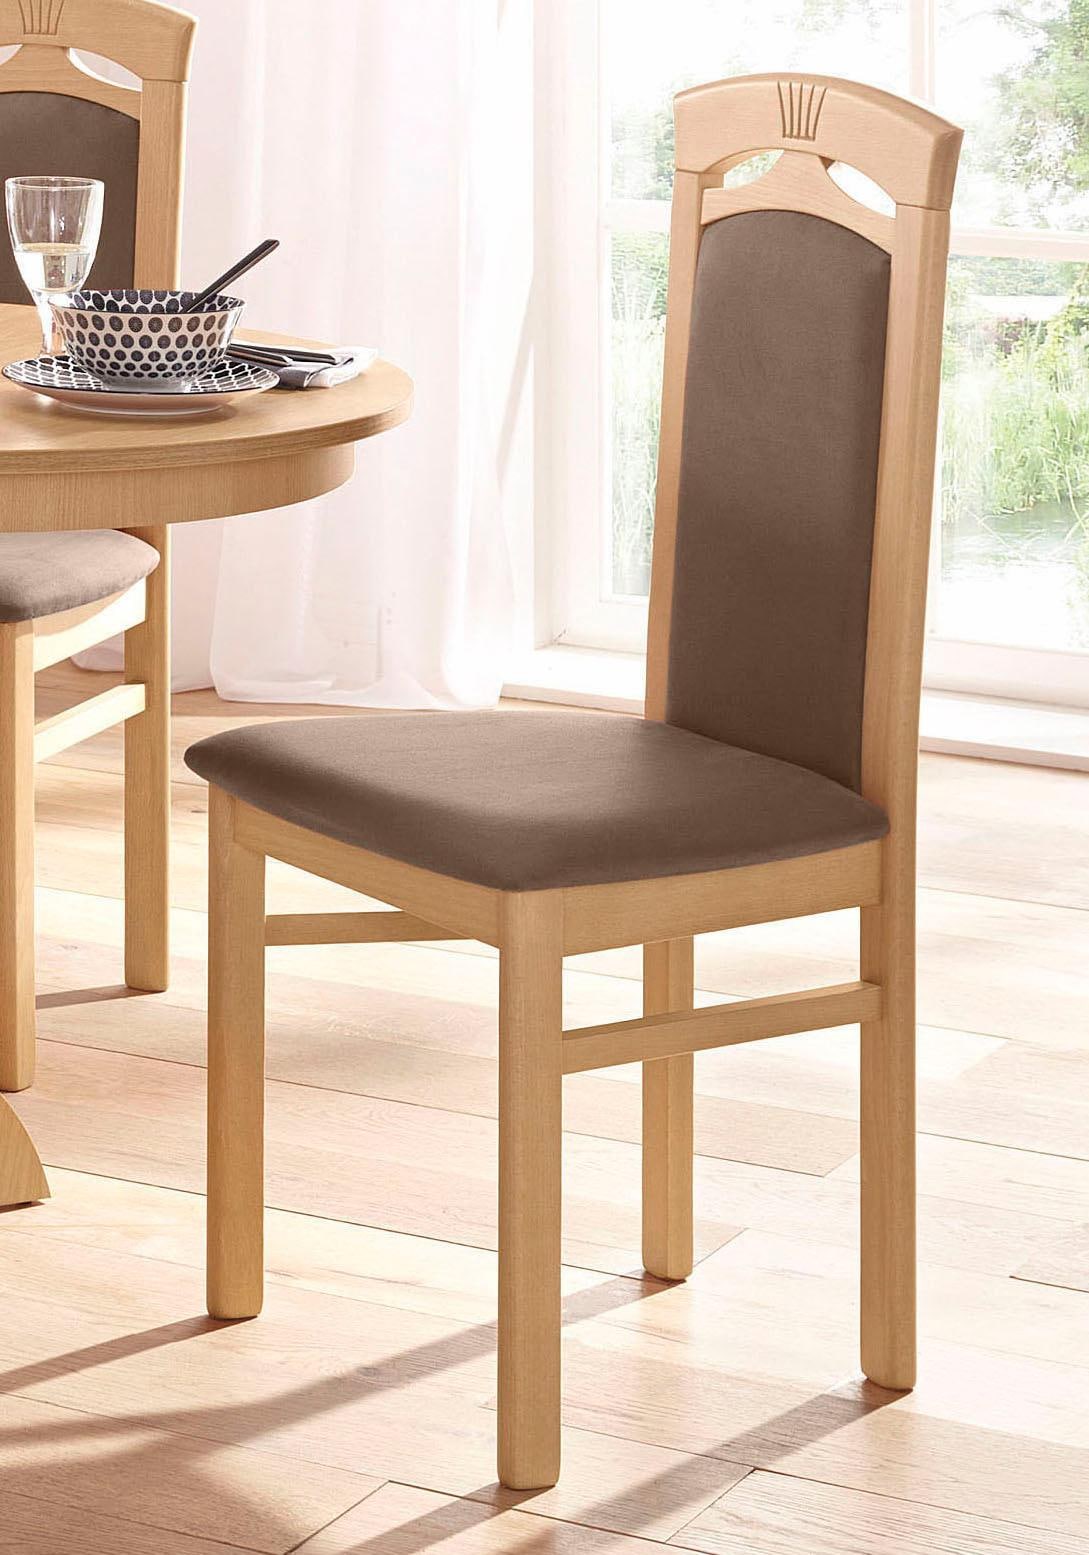 Stühle online kaufen | Stühle in grosser Auswahl bei Ackermann | 4-Fuß-Stühle